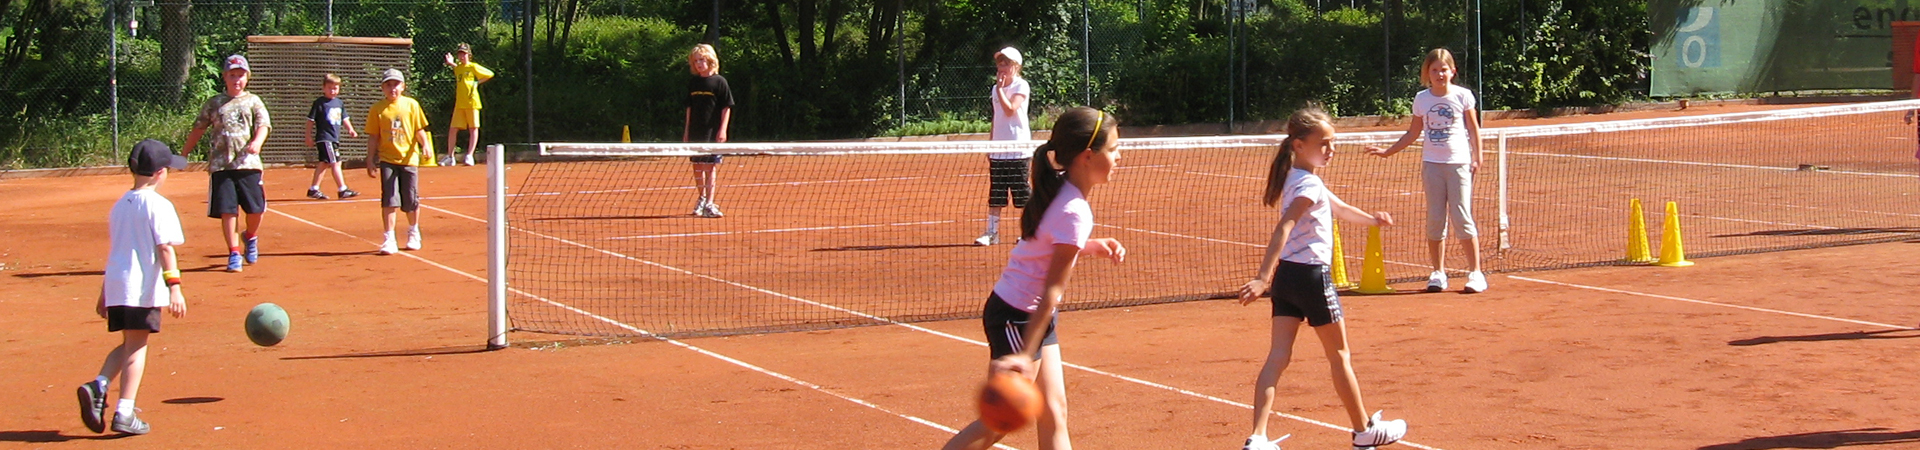 Tennis-Camps Tennisschule Fuchs